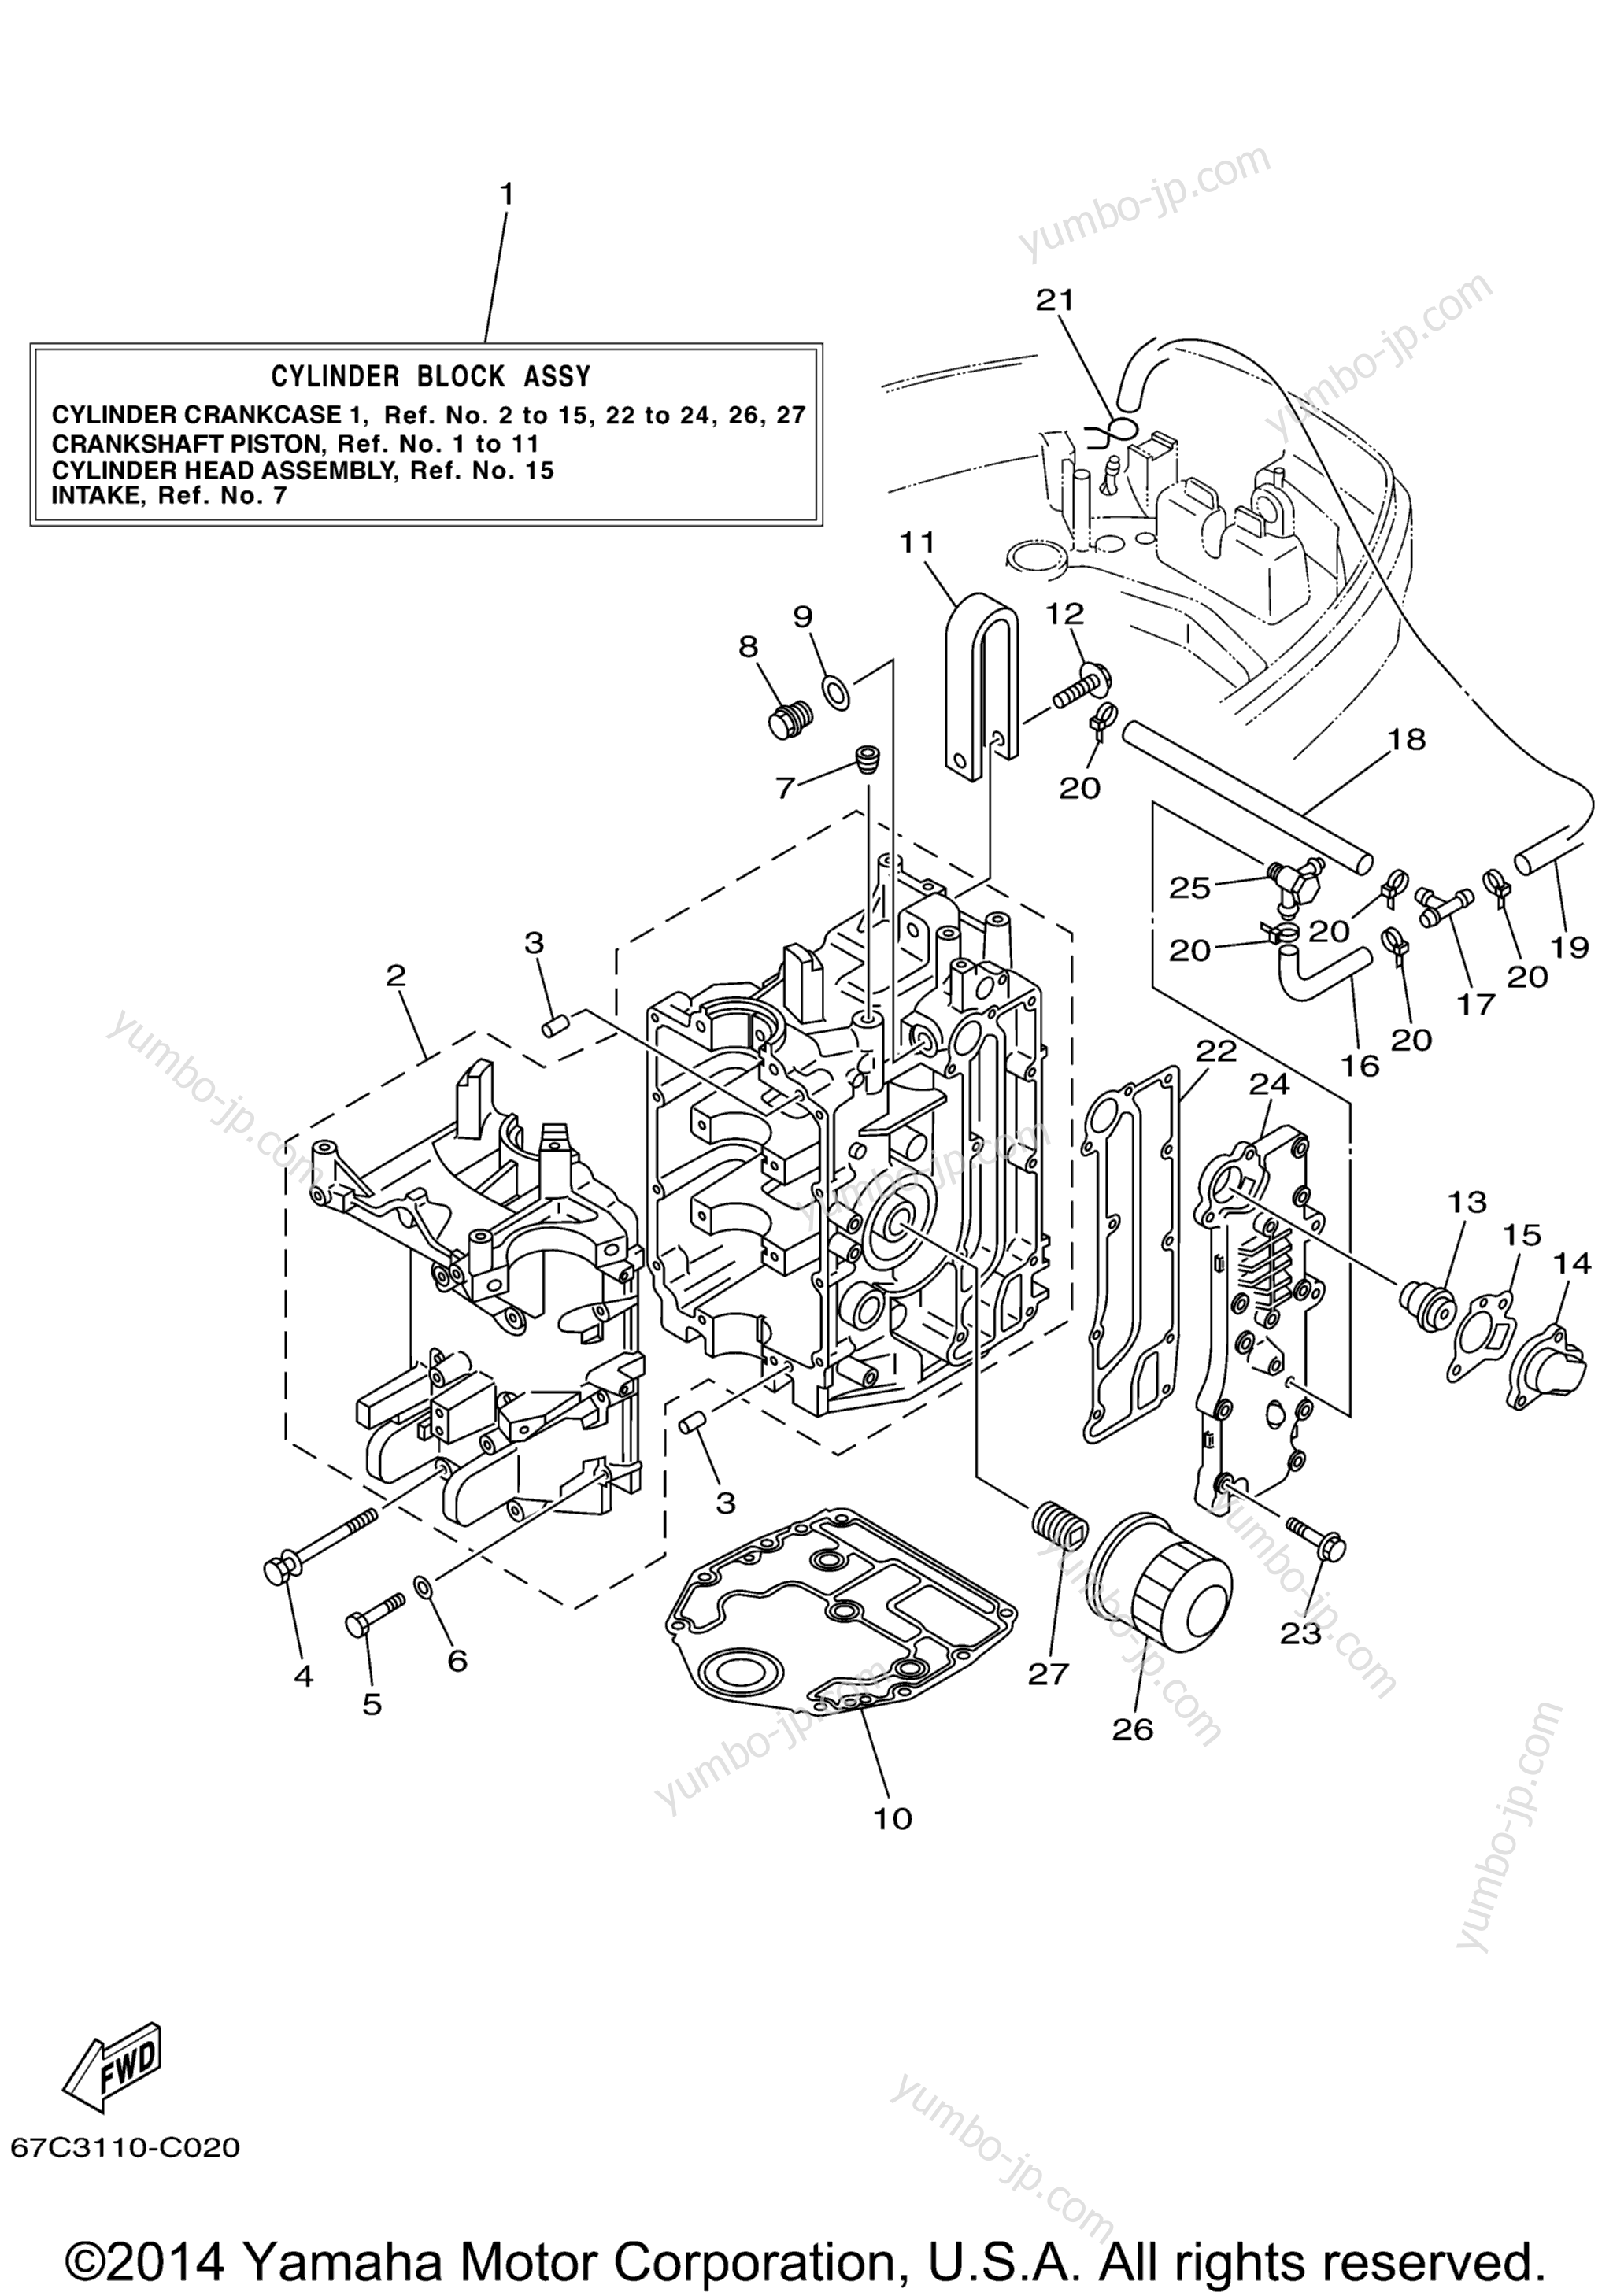 Cylinder Crankcase 1 для лодочных моторов YAMAHA F40TLRD_MSHD_MLHD_MJHD_ELRD (F40MLHD) 2005 г.